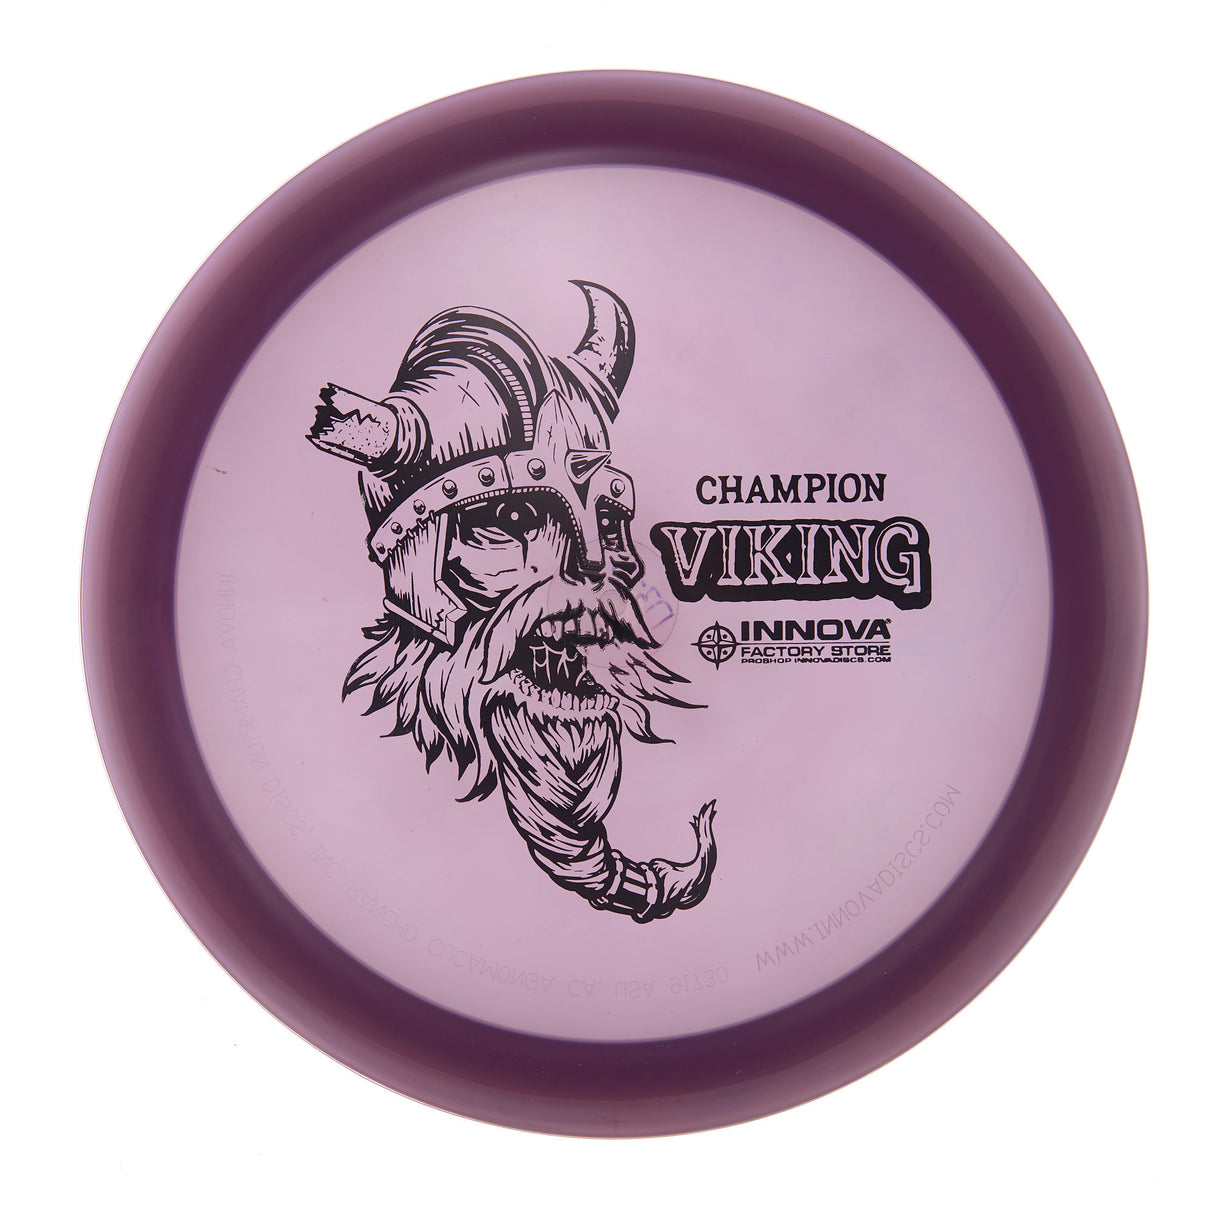 Innova Viking - Champion  174g | Style 0003